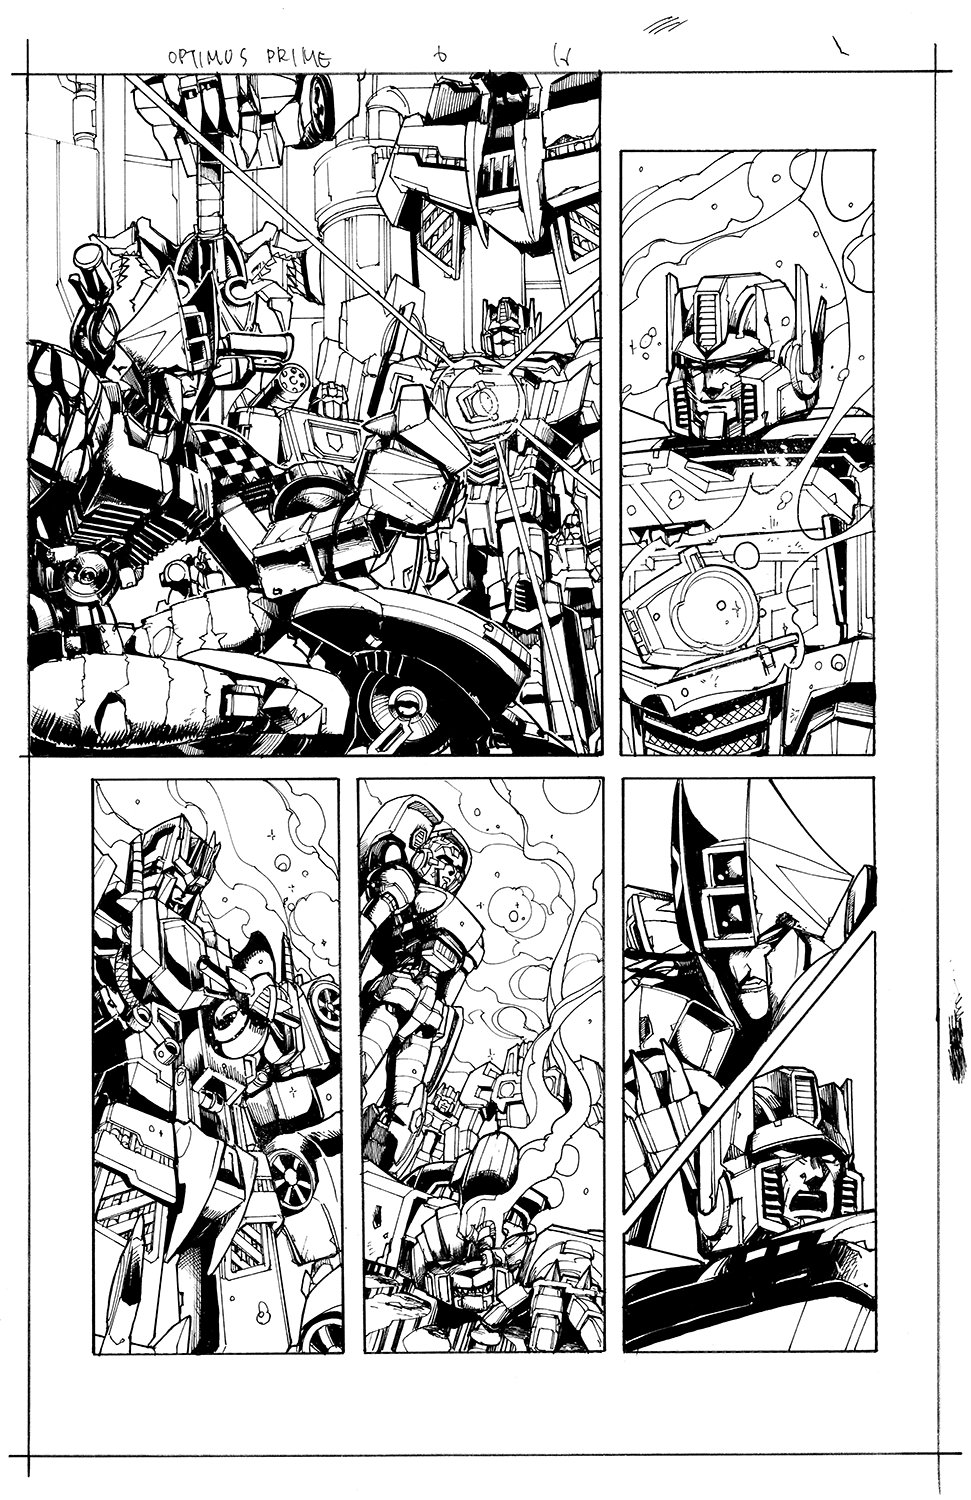 Optimus Prime #6 Page 16